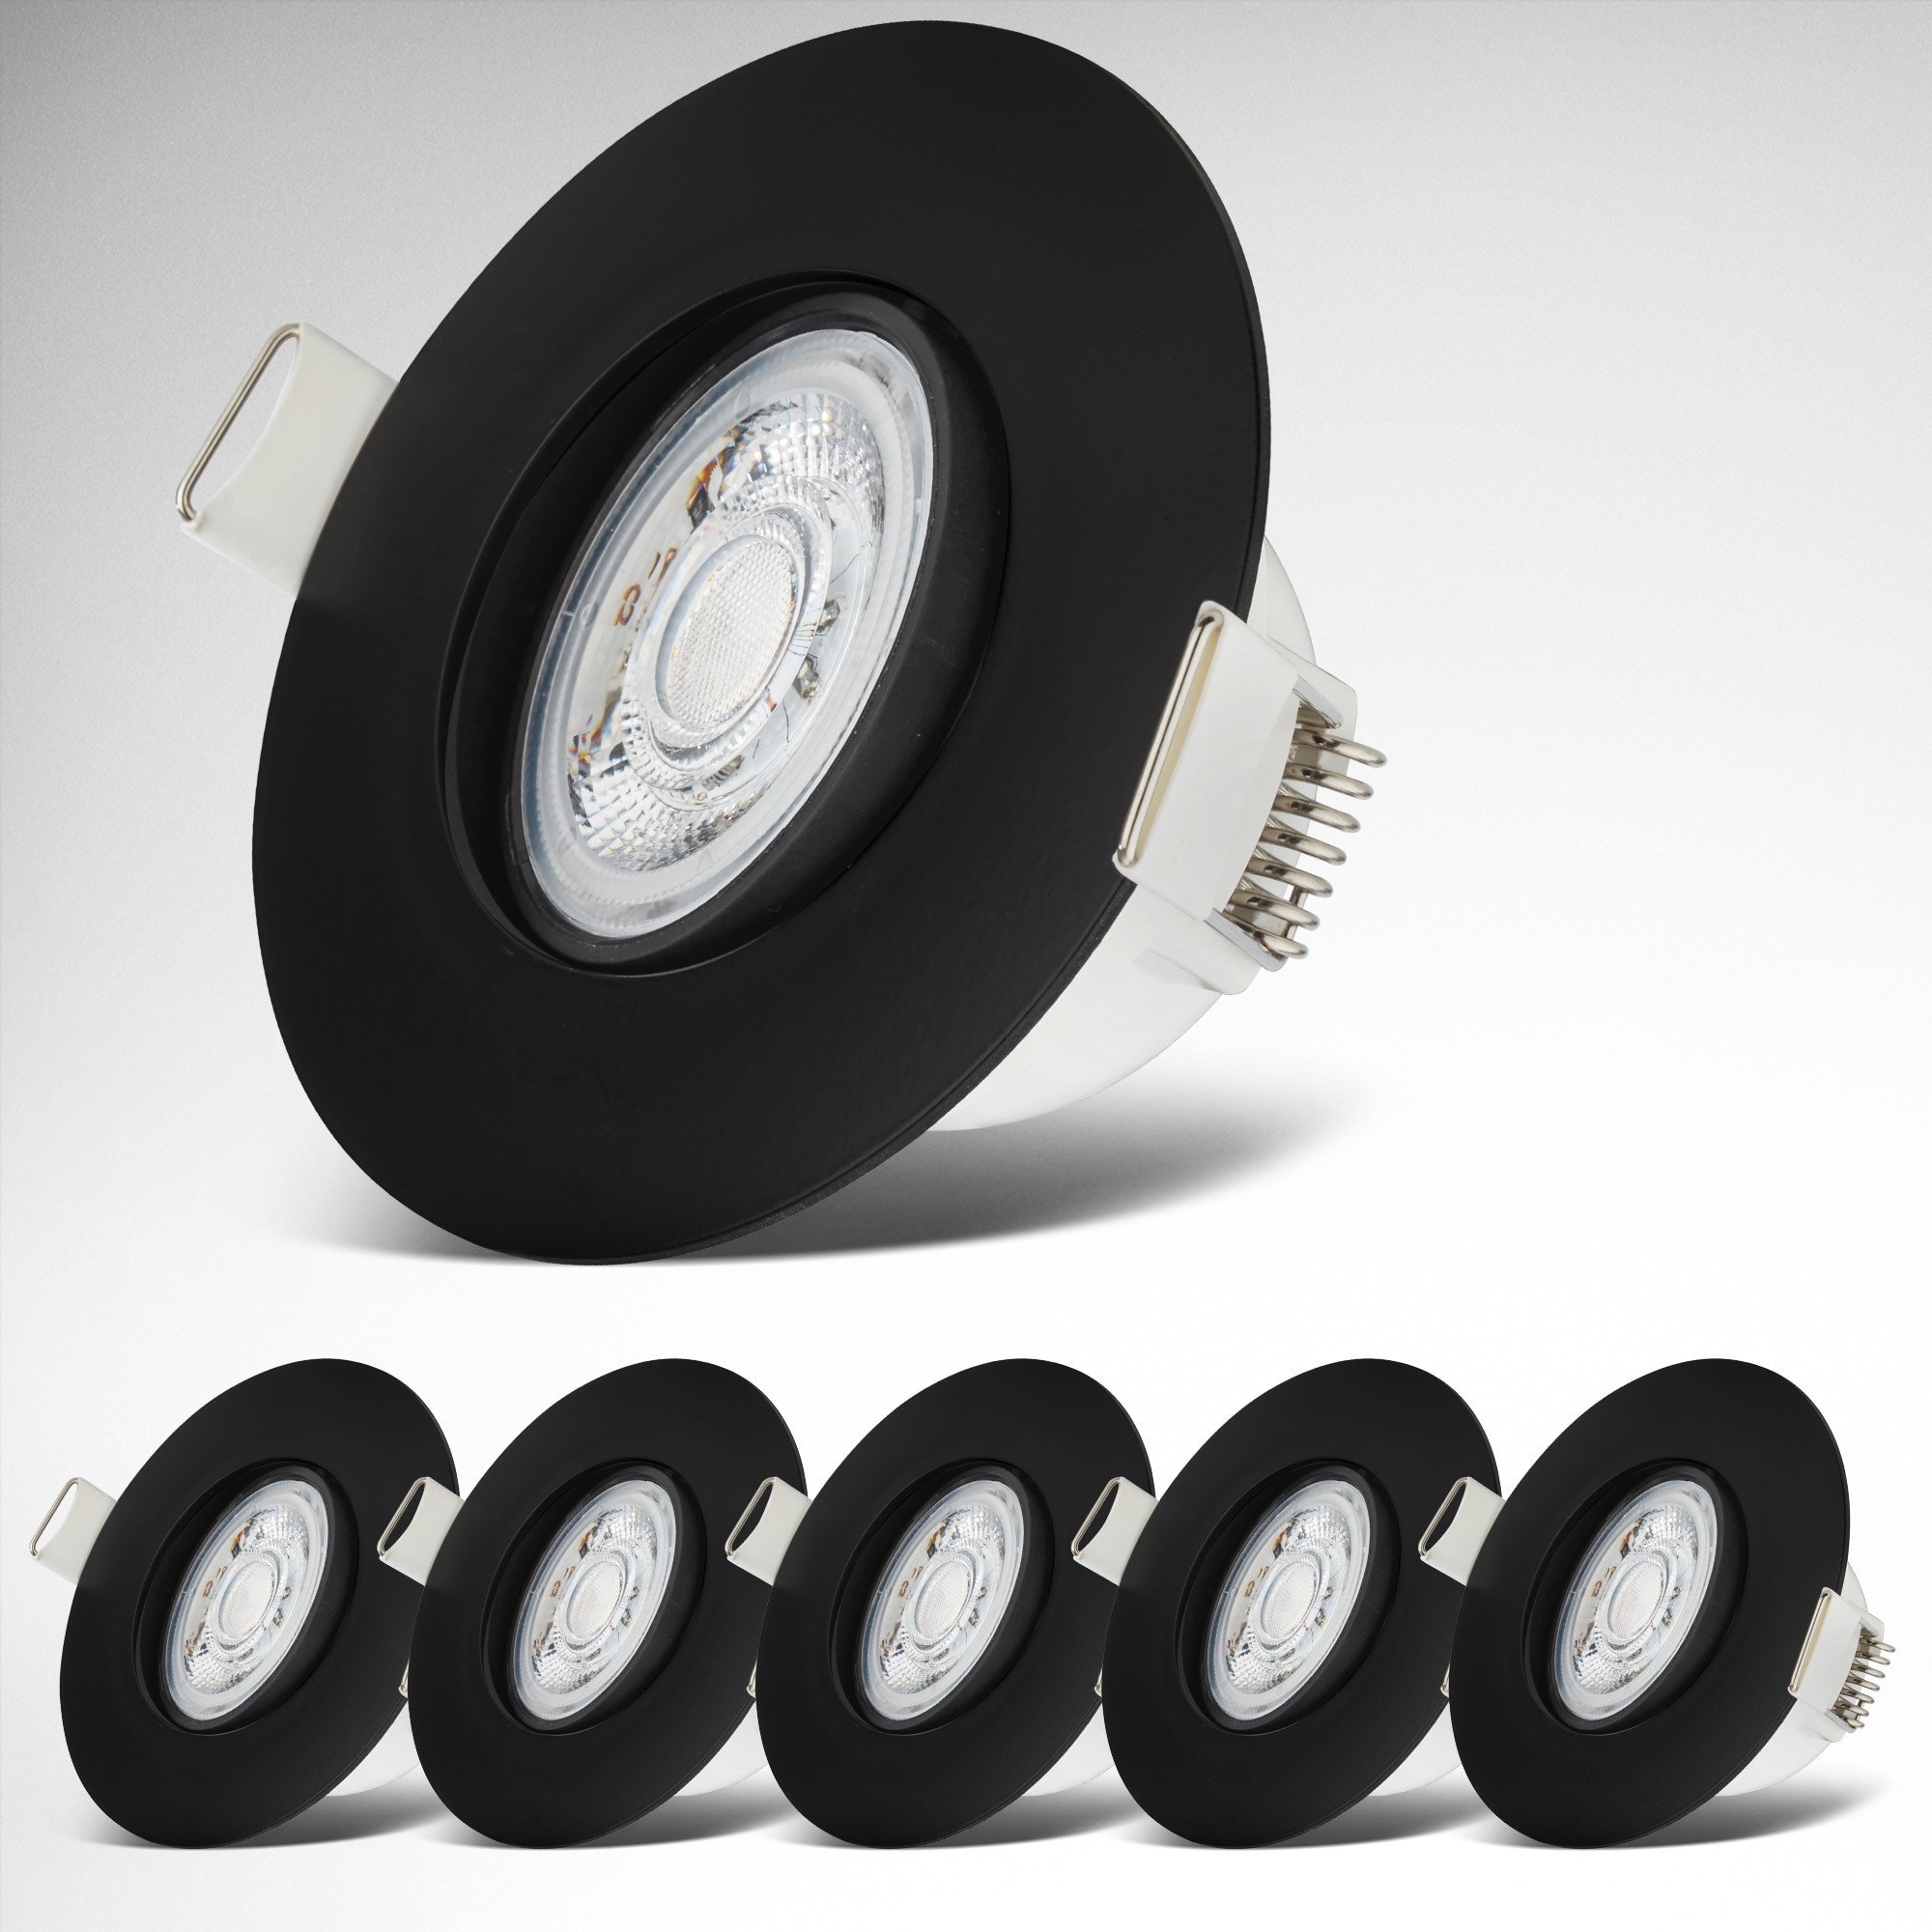 LED Einbauleuchten-Set, 6-teilig, Schutzart IP65, Strahler schwenkbar